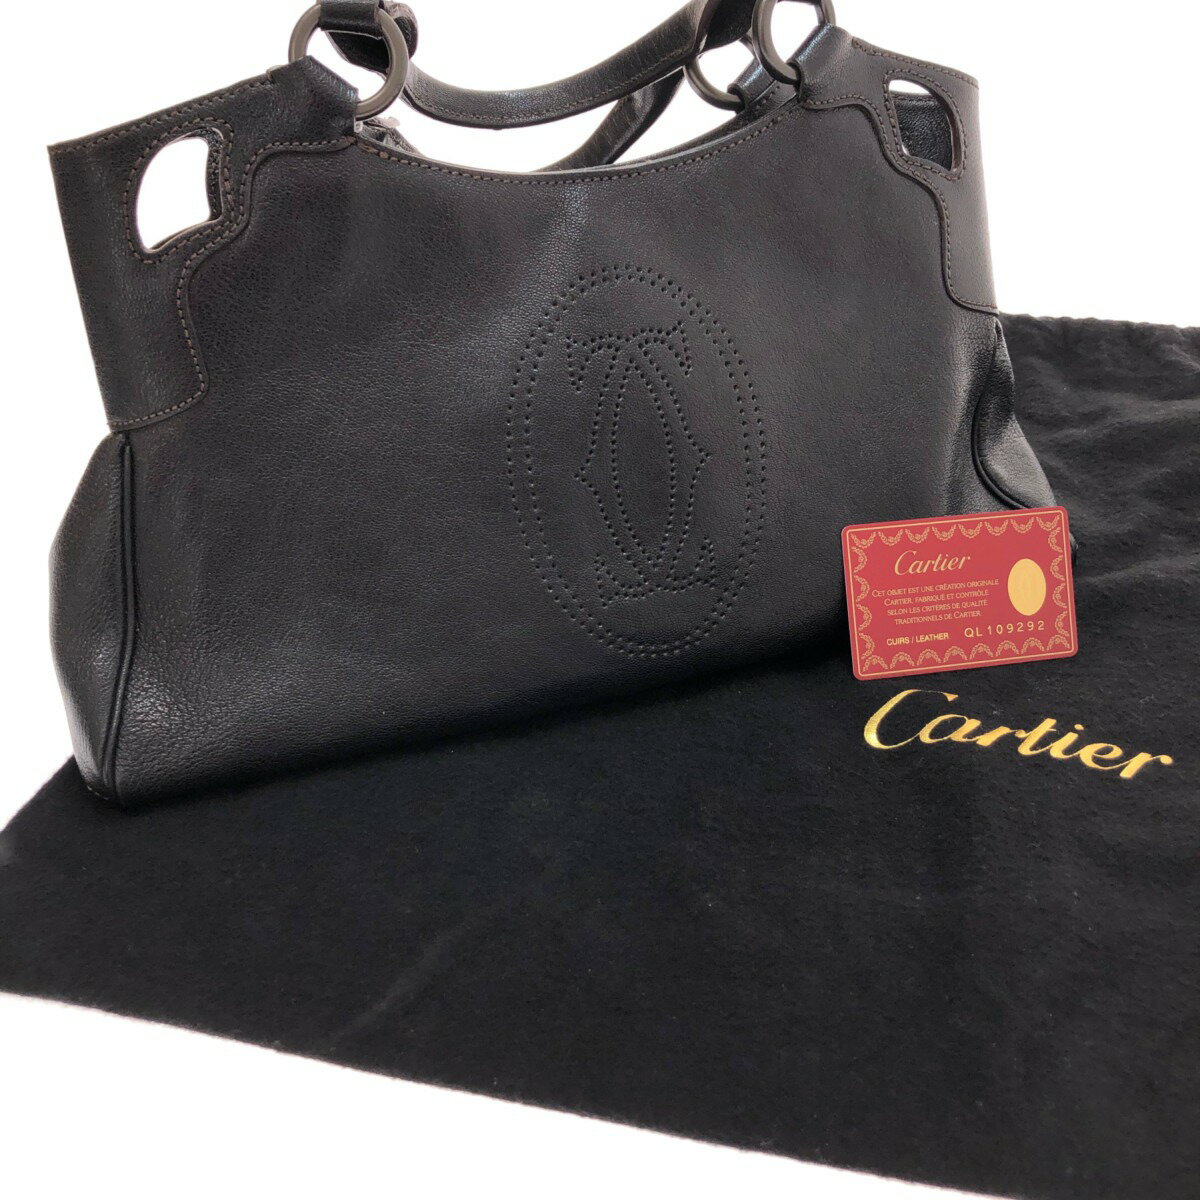 □□【中古】Cartier カルティエ ハンドバッグ ブラック Bランク